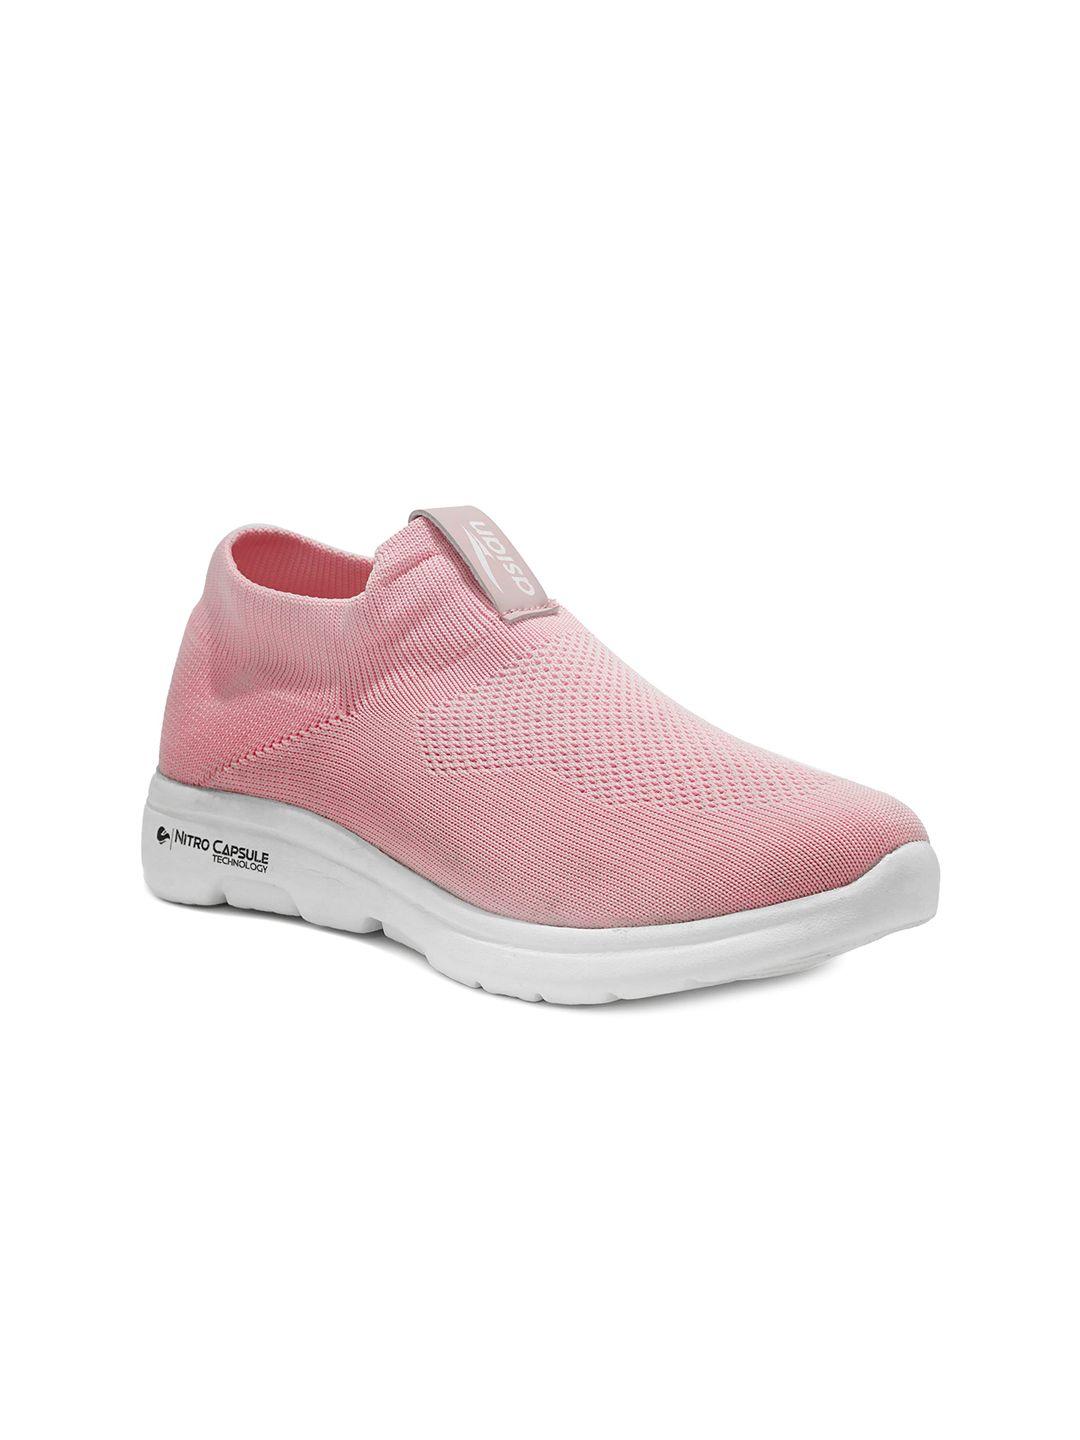 asian-women-pink-printed-slip-on-sneakers